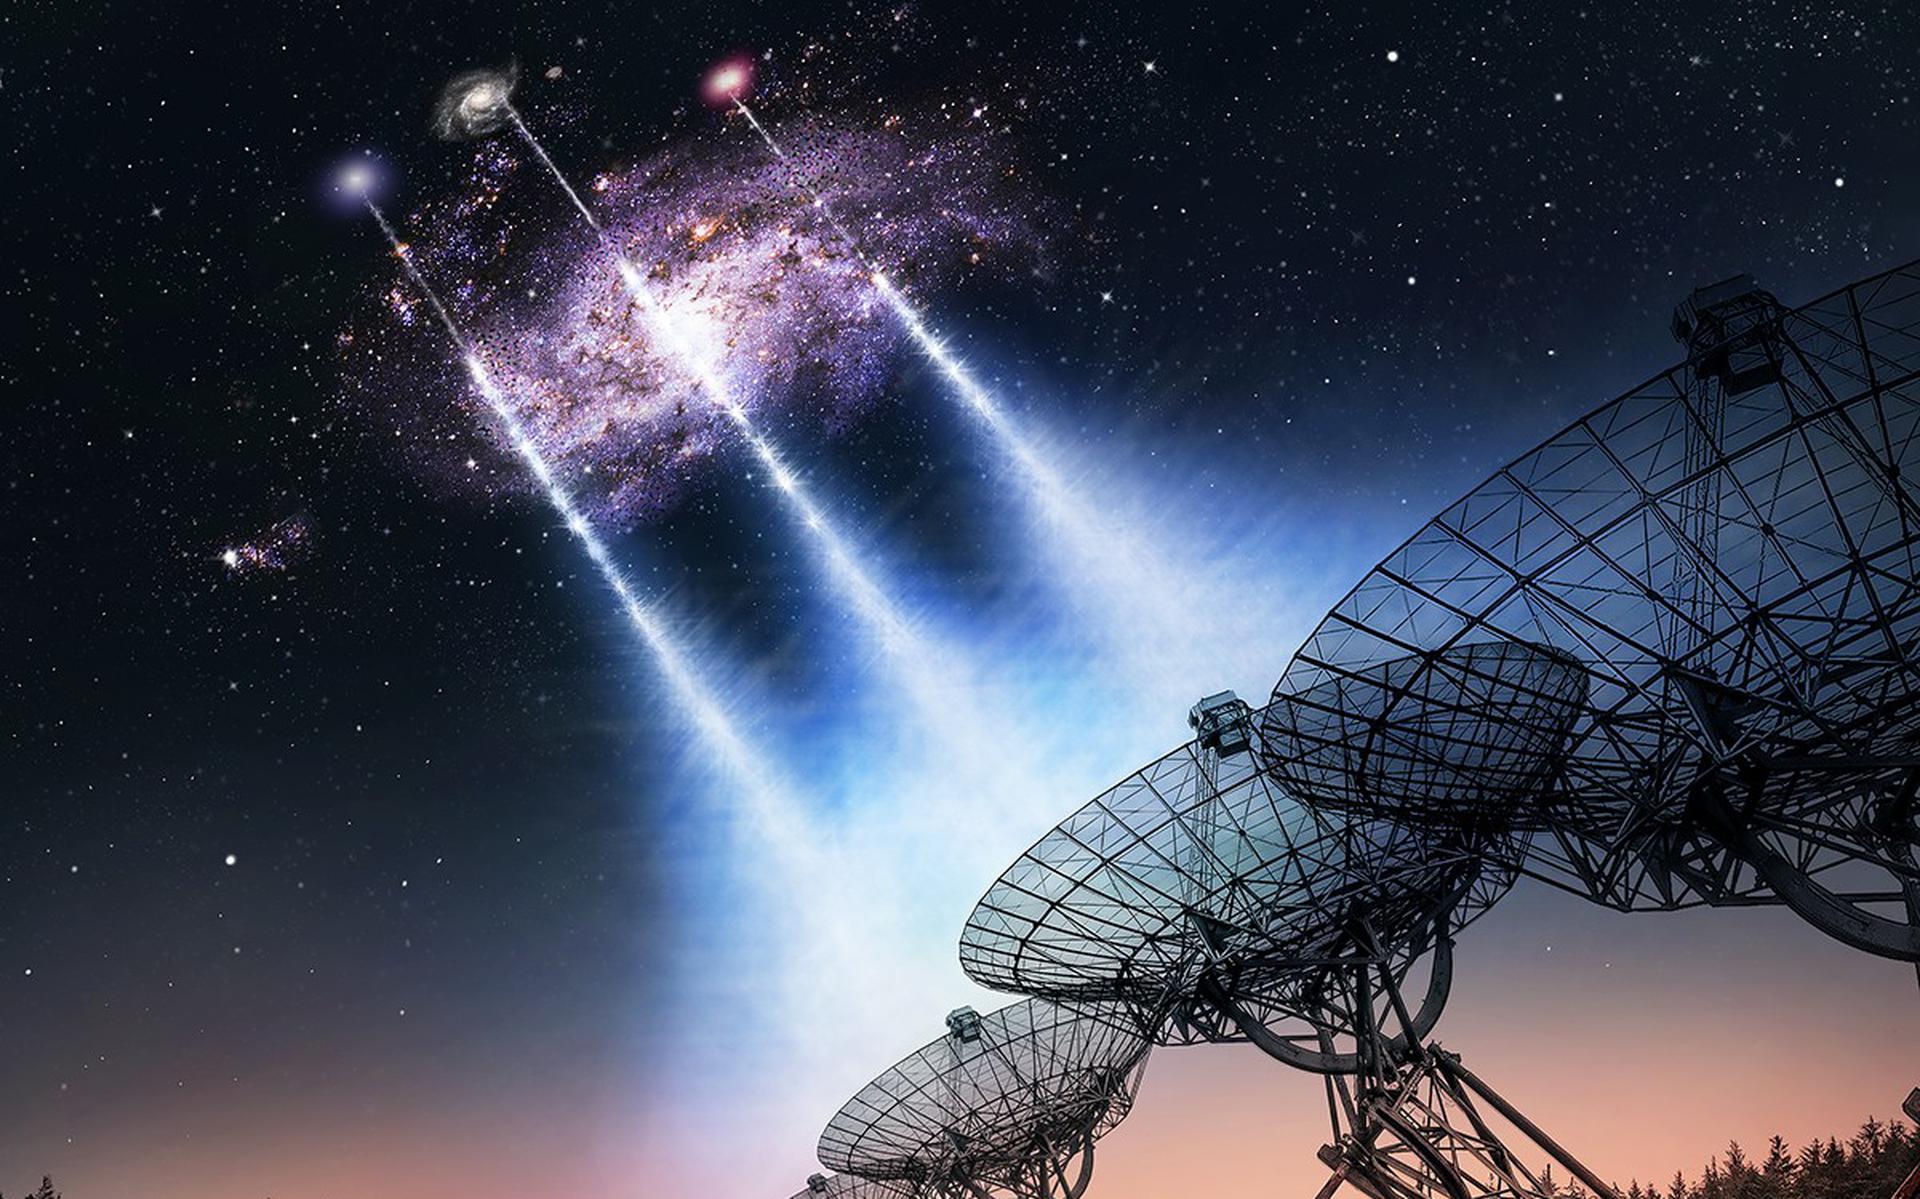 Drie nieuwe Fast Radio Bursts die de Westerbork telescoop heeft ontdekt, blijken de halo van ons buurmelkwegstelsel de Driehoeksnevel te hebben doorklieft. Dankzij de veel scherpere nieuwe livebeelden konden astronomen voor het eerst schatten hoeveel onzichtbare atomen het stelsel maximaal bevat